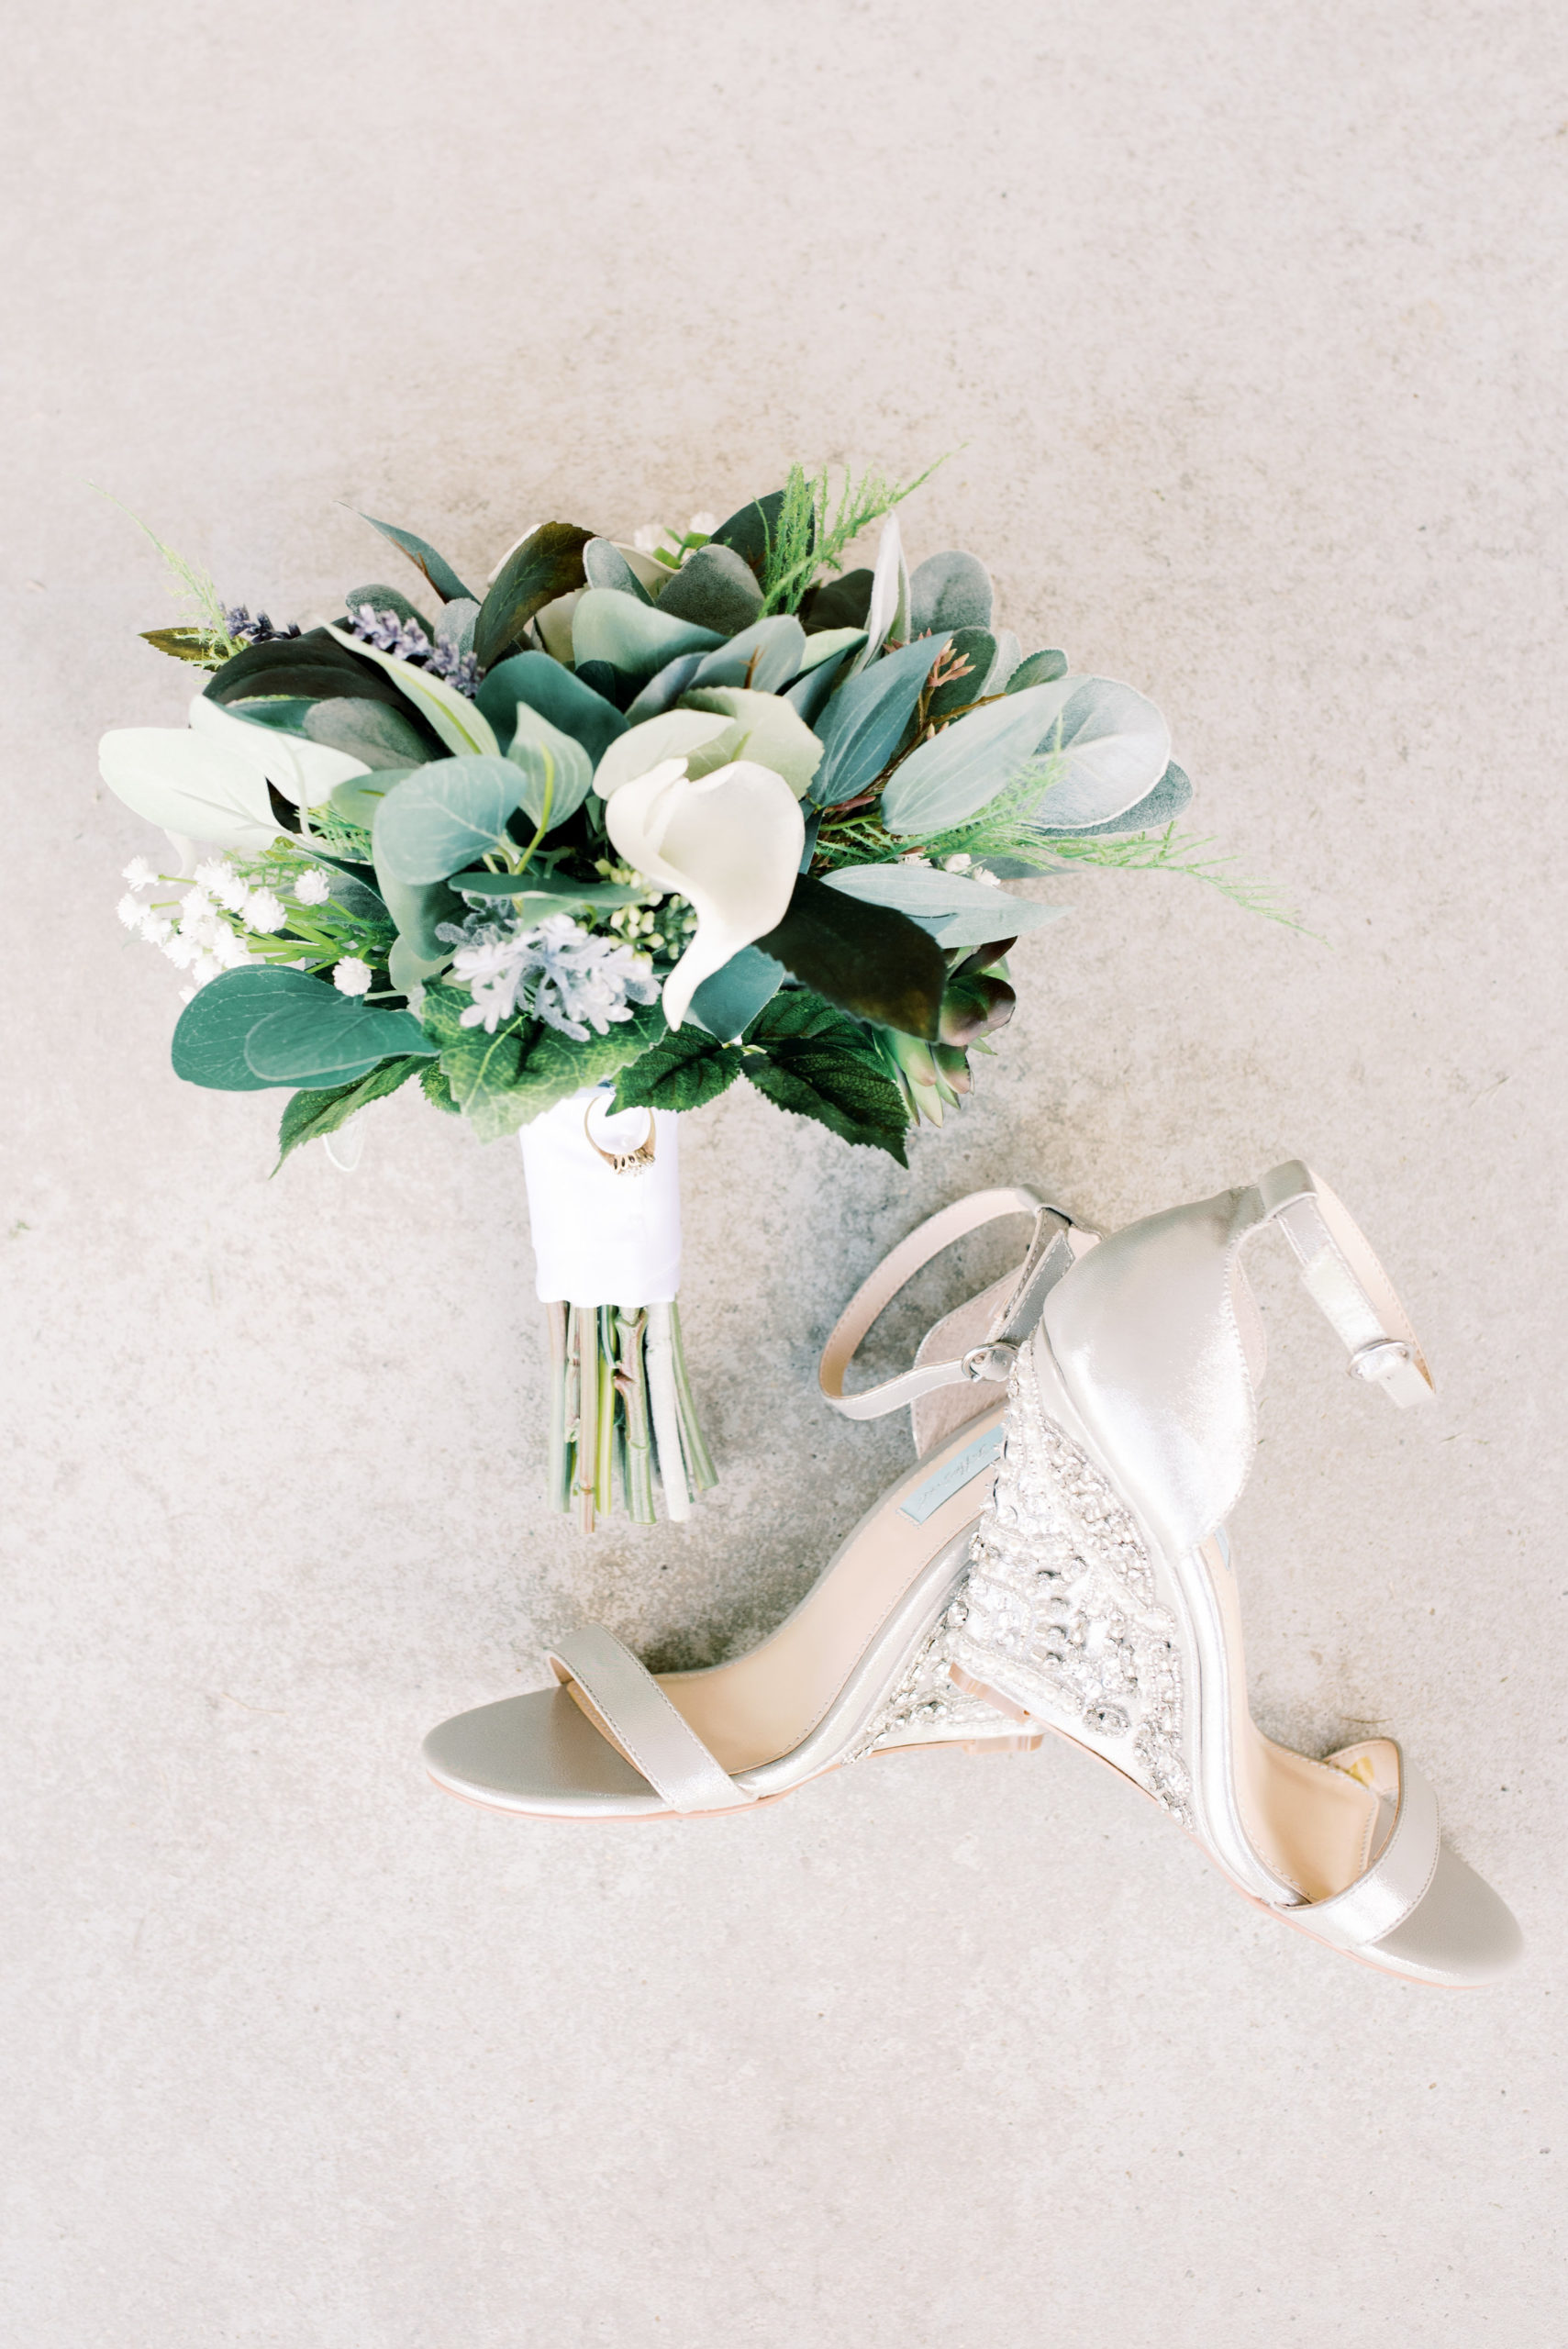 lexington-wedding-photographer-bouquet